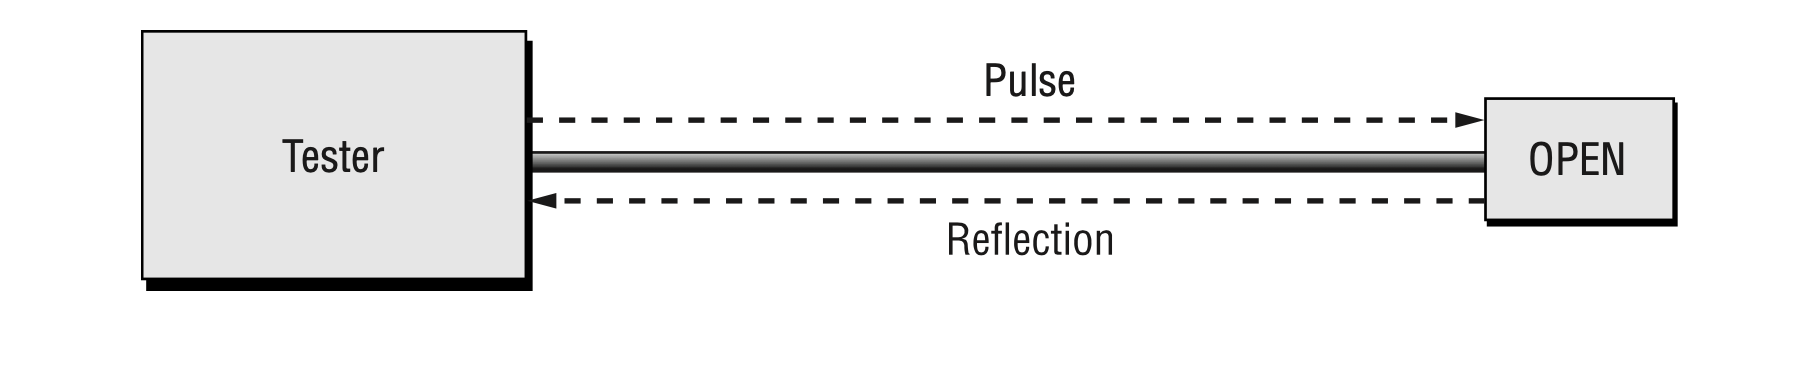 دستگاه سنجش بازتاب دامنه زمان، زمان لازم جهت حرکت یک پالس به انتهای کابل و برگشت را اندازه گیری می نماید.